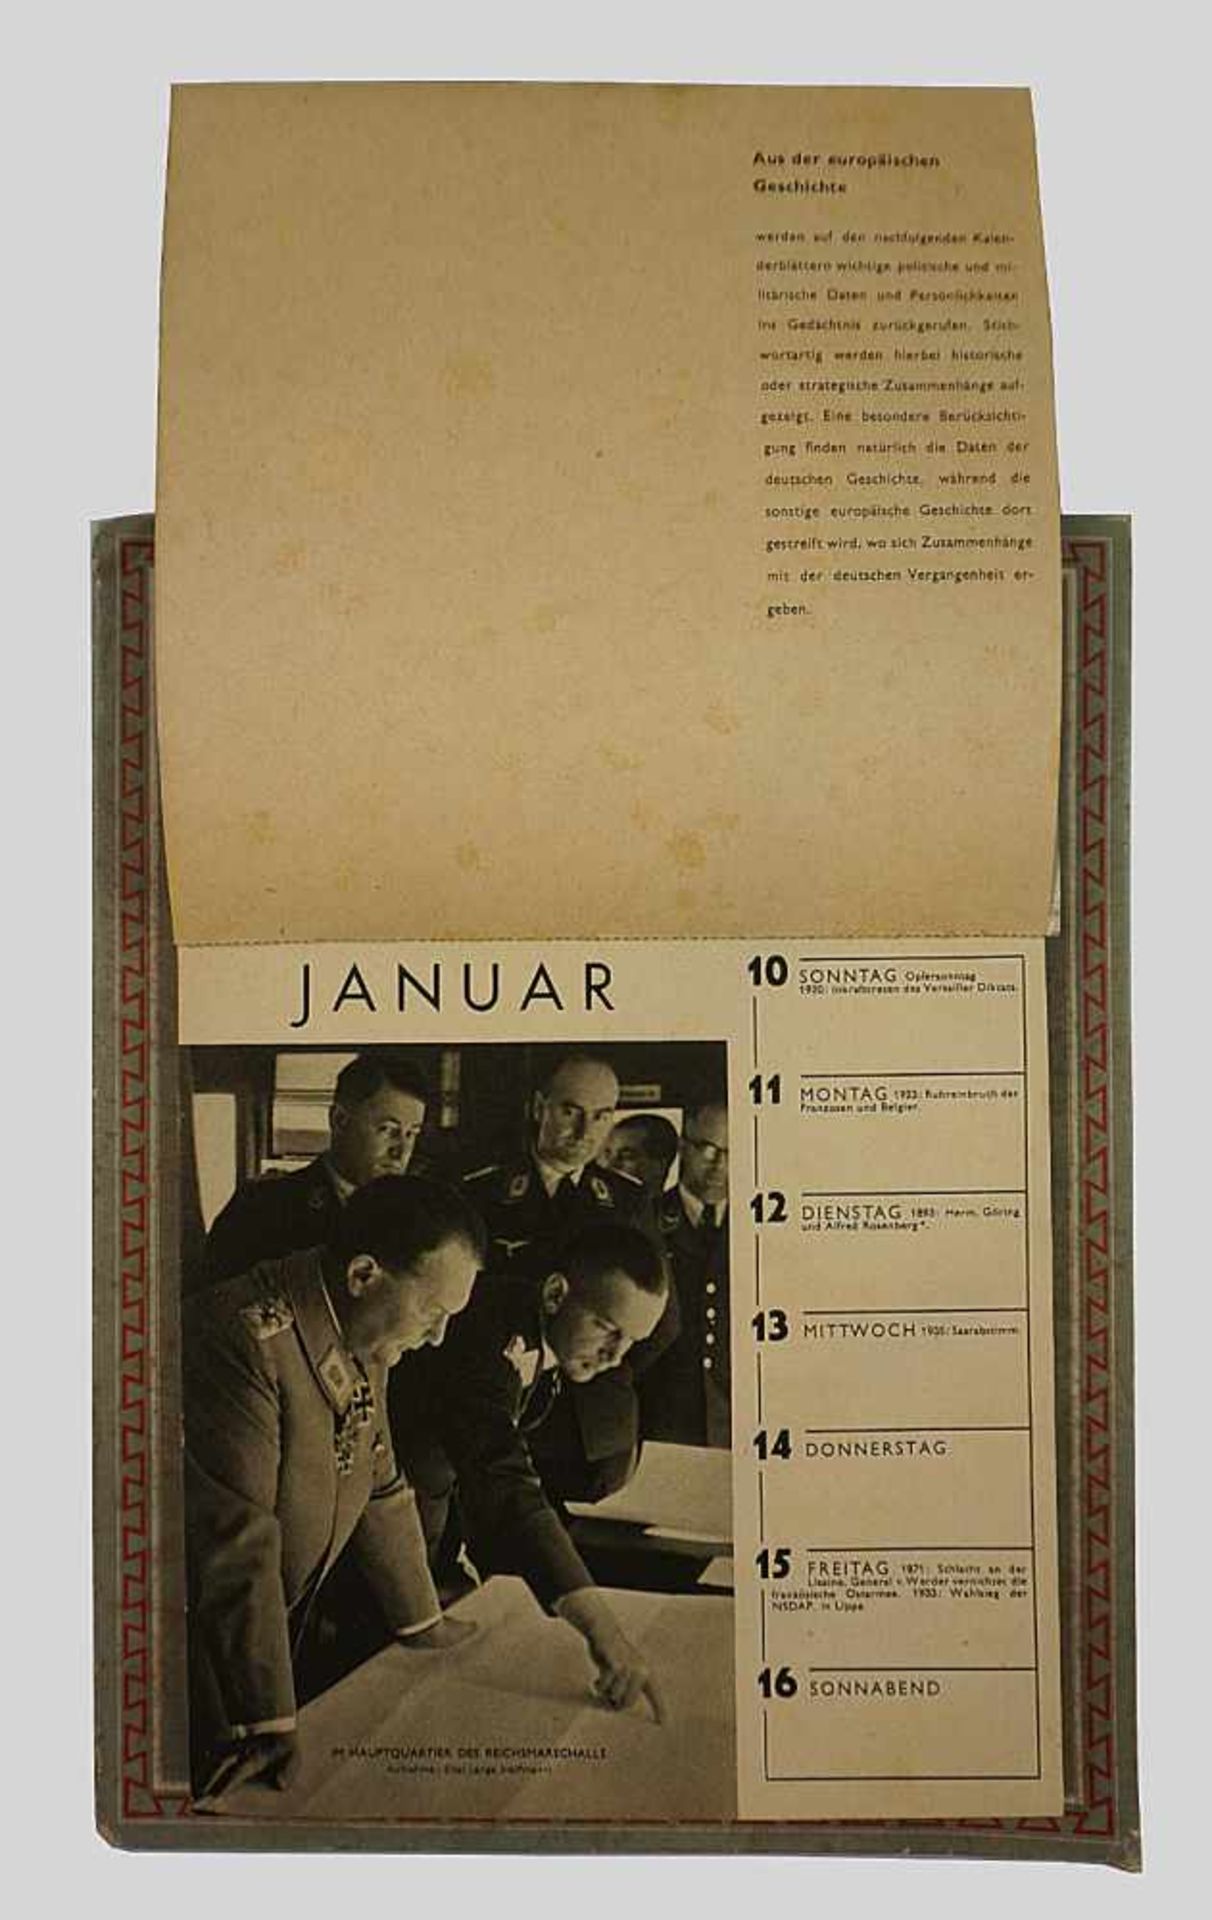 1 Wehrmachtkalender 3. Reich, dat. 1943 - Image 2 of 2